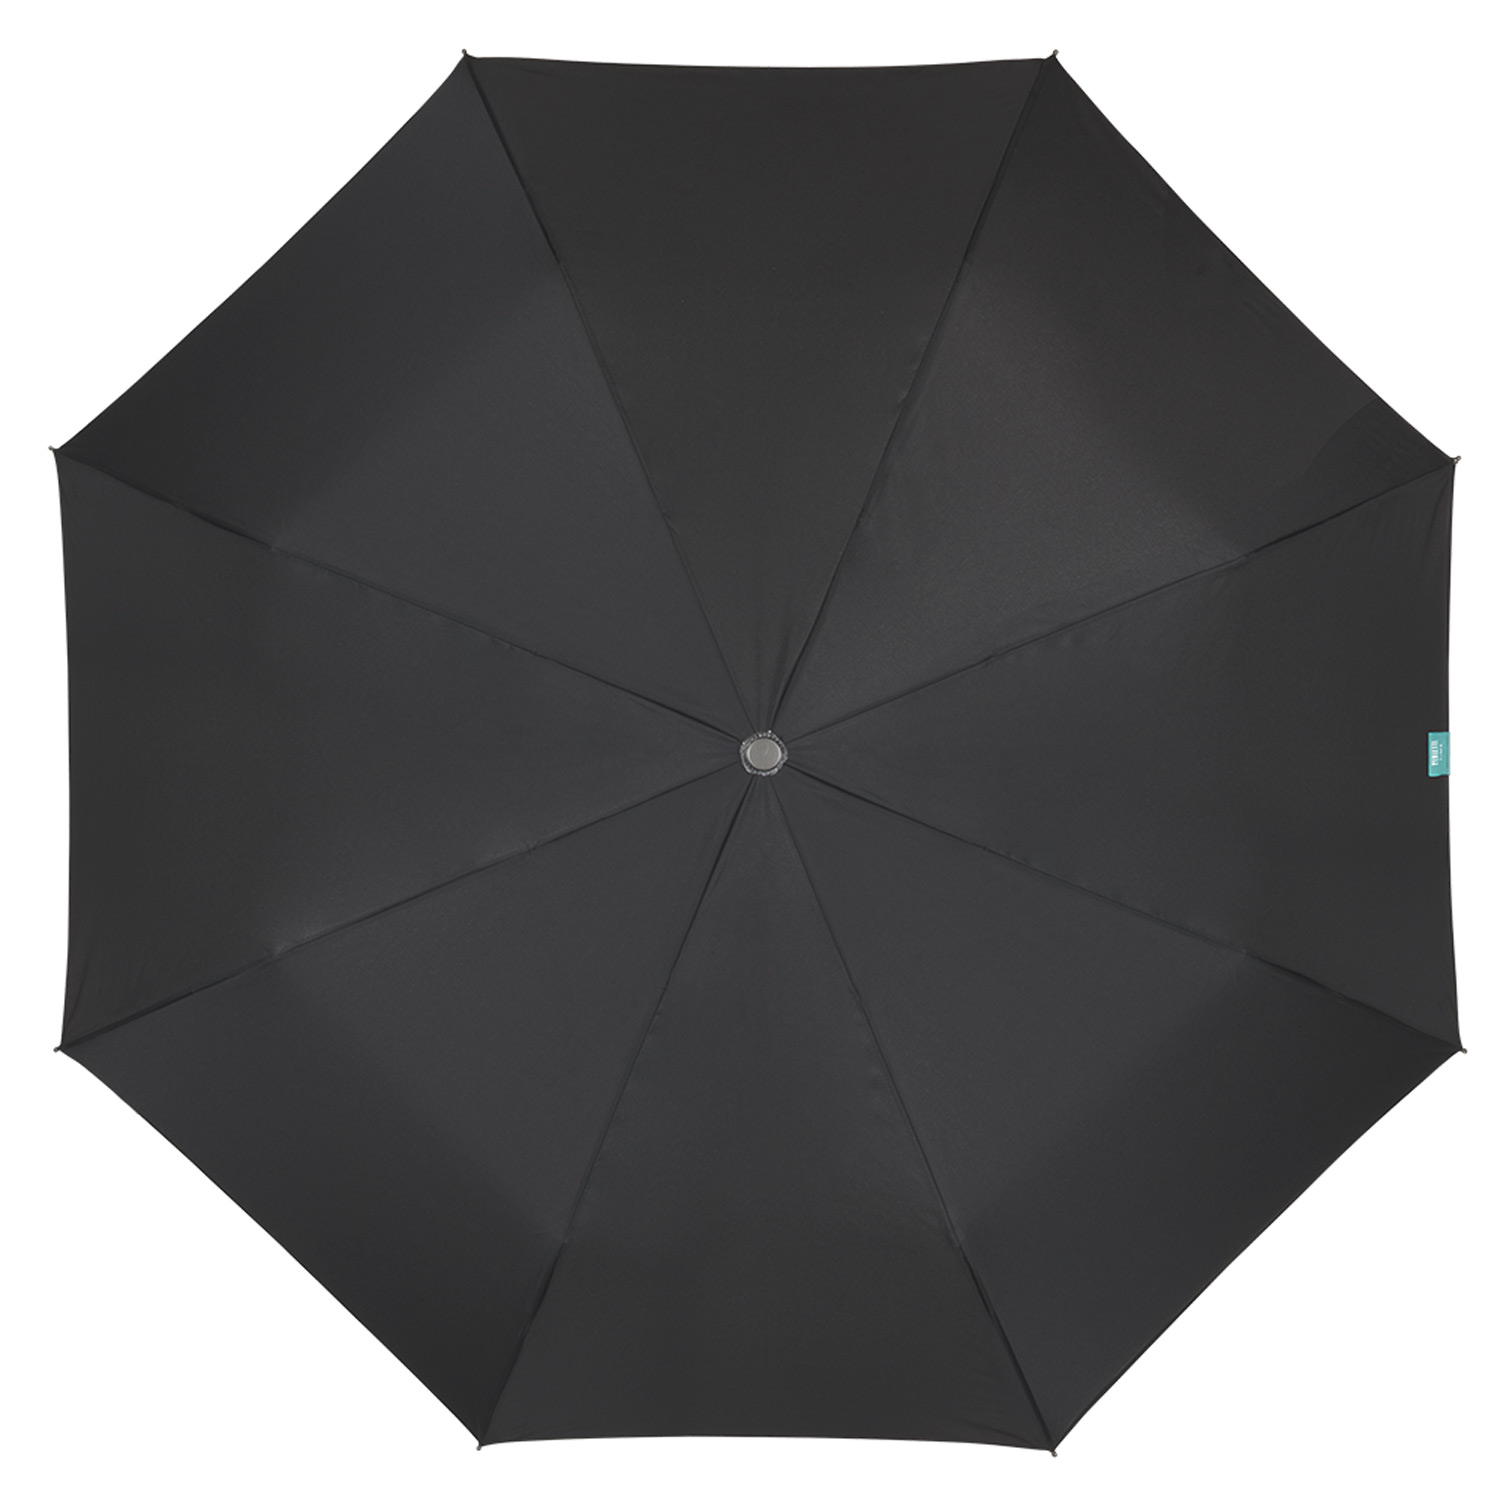 Зонтик Perletti Time складной автоматический черный (26016) - фото 3